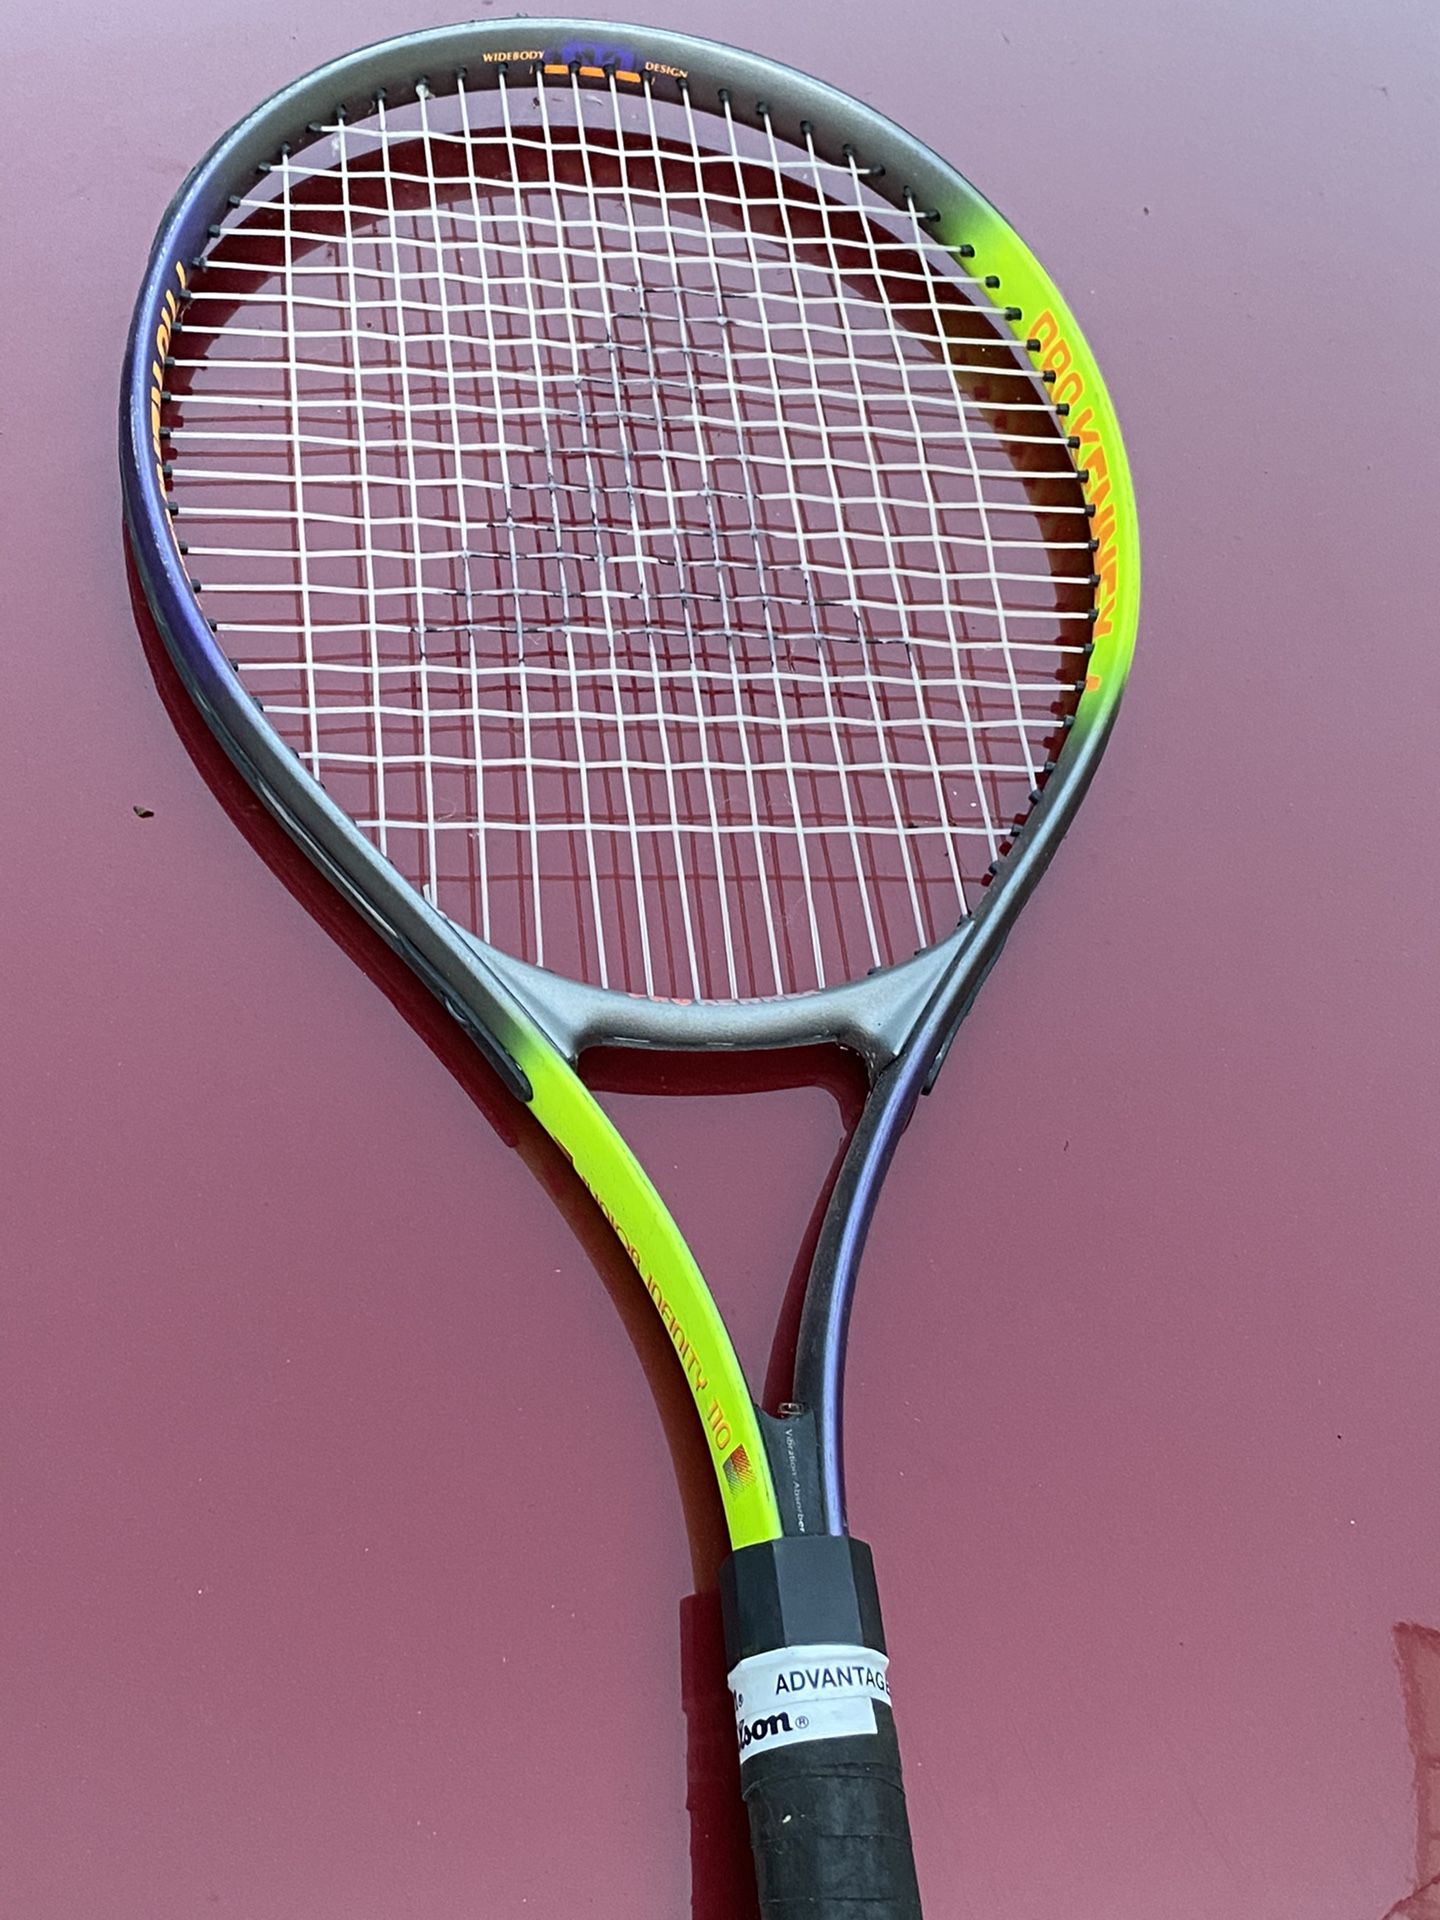 Pro Kennex Widebody design Junior Destiny 110 Tennis Racquet 4" grip #3112